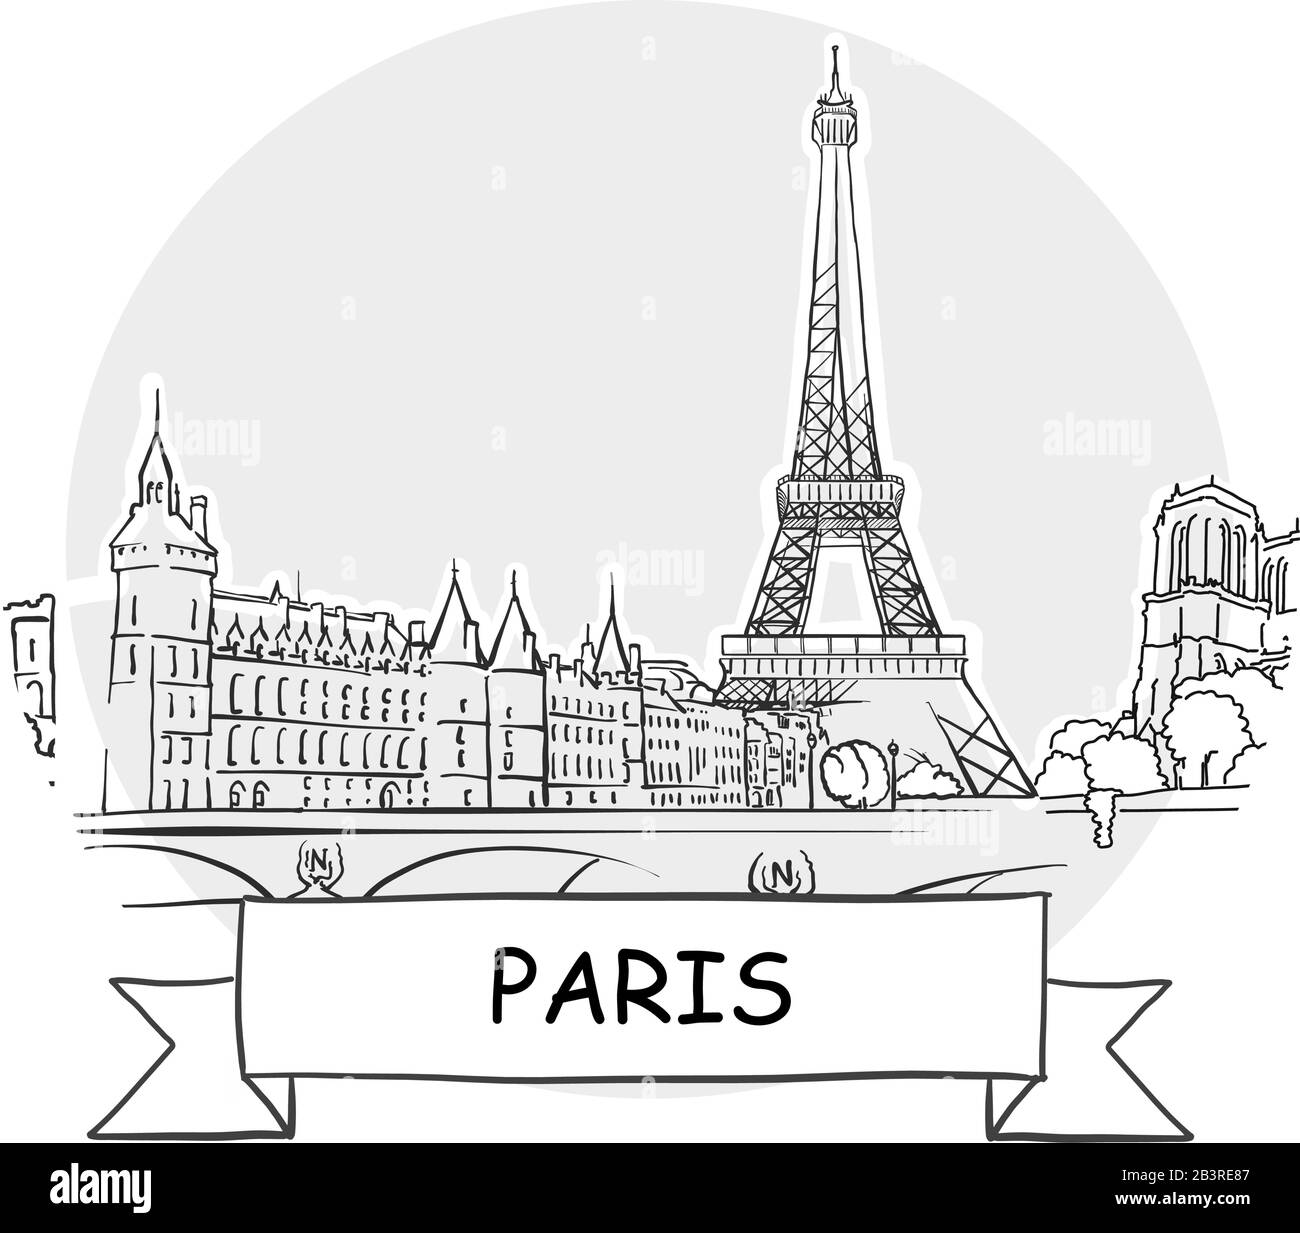 Segno Vettore Urbano Disegnato A Mano A Parigi. Illustrazione Della Linea Nera Con Barra Multifunzione E Titolo. Illustrazione Vettoriale